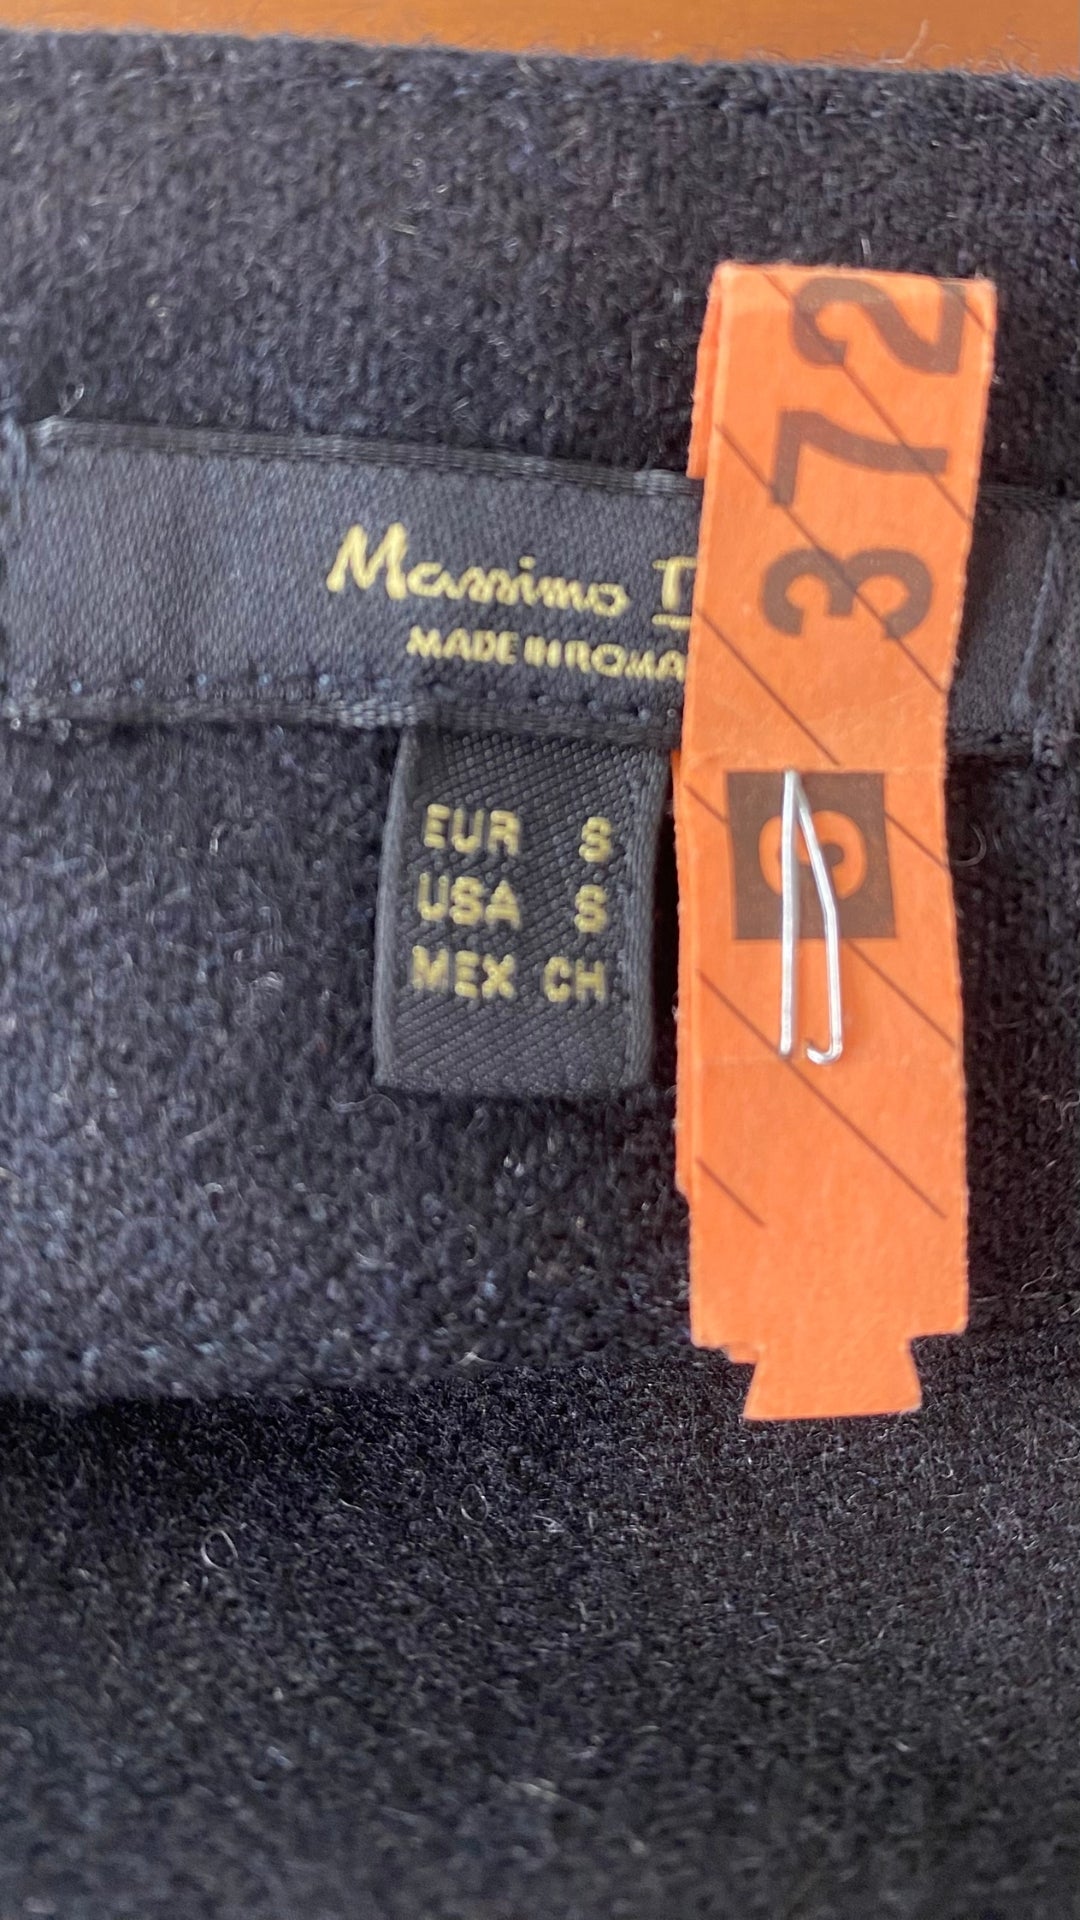 Jupe longue noire chiné en lainage Massimo Dutti, taille small. Vue de l'étiquette de marque et taille.